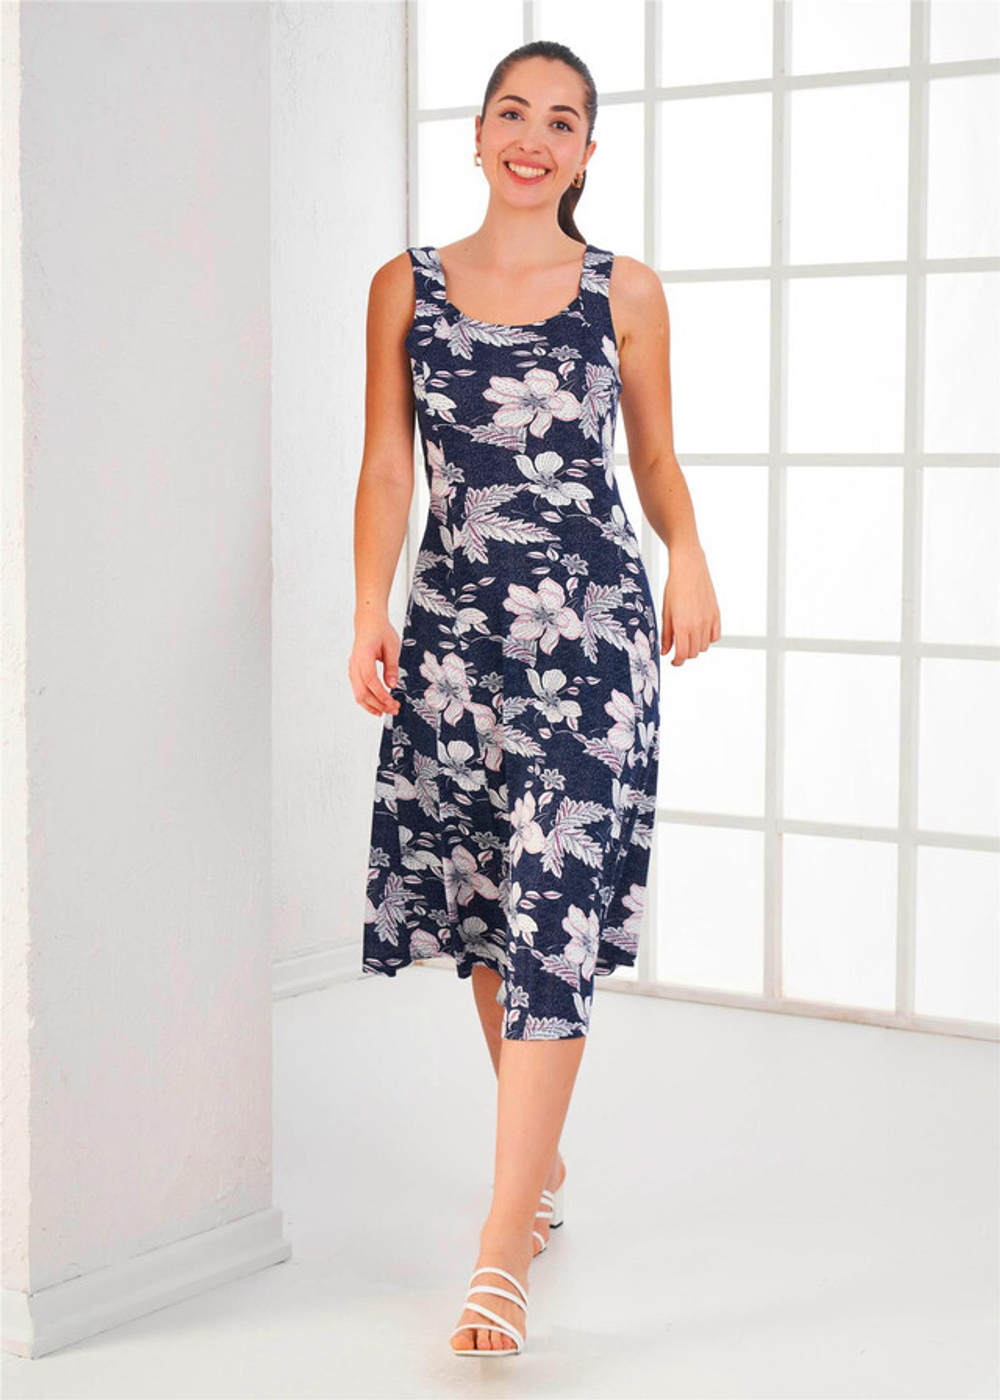 RELAX MODE / Платье женское летнее повседневное хлопок модал - 45376